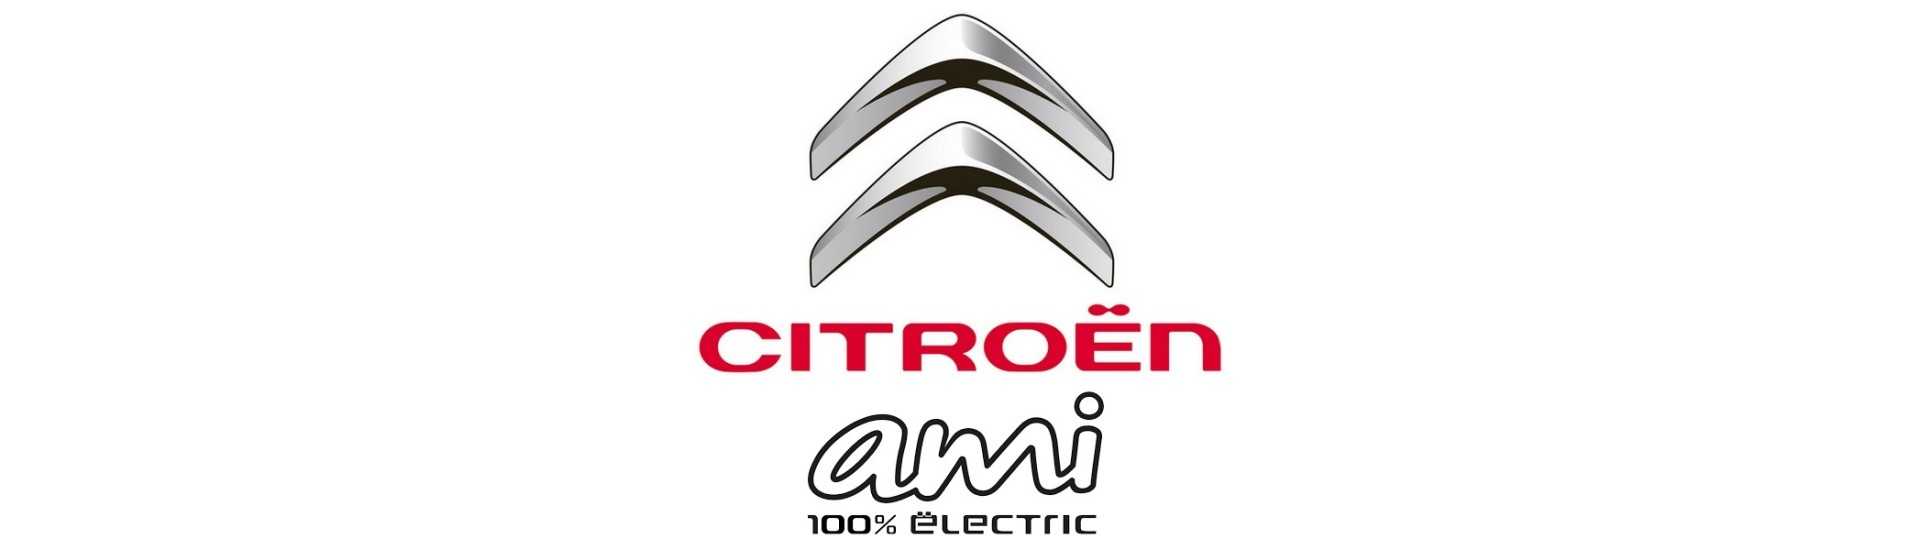 Bästa prisindikator för bil utan tillstånd Citroën Ami